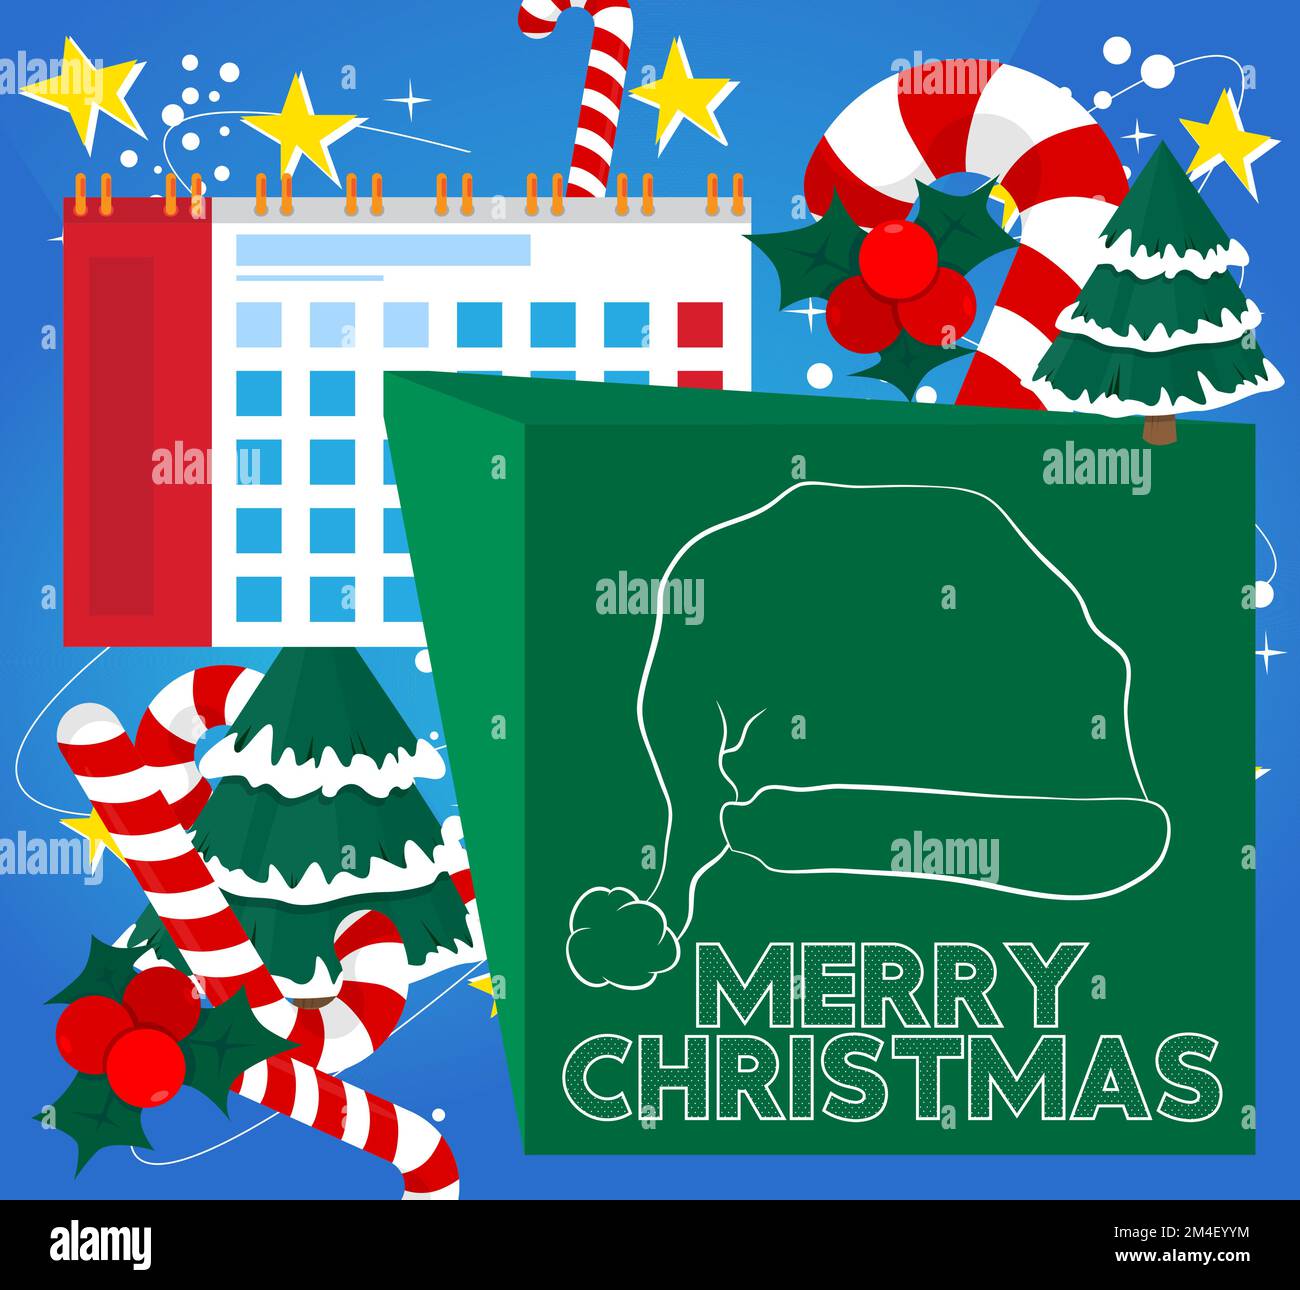 Merry Christmas text with Calendar. Cartoon vector illustration. Stock Vector